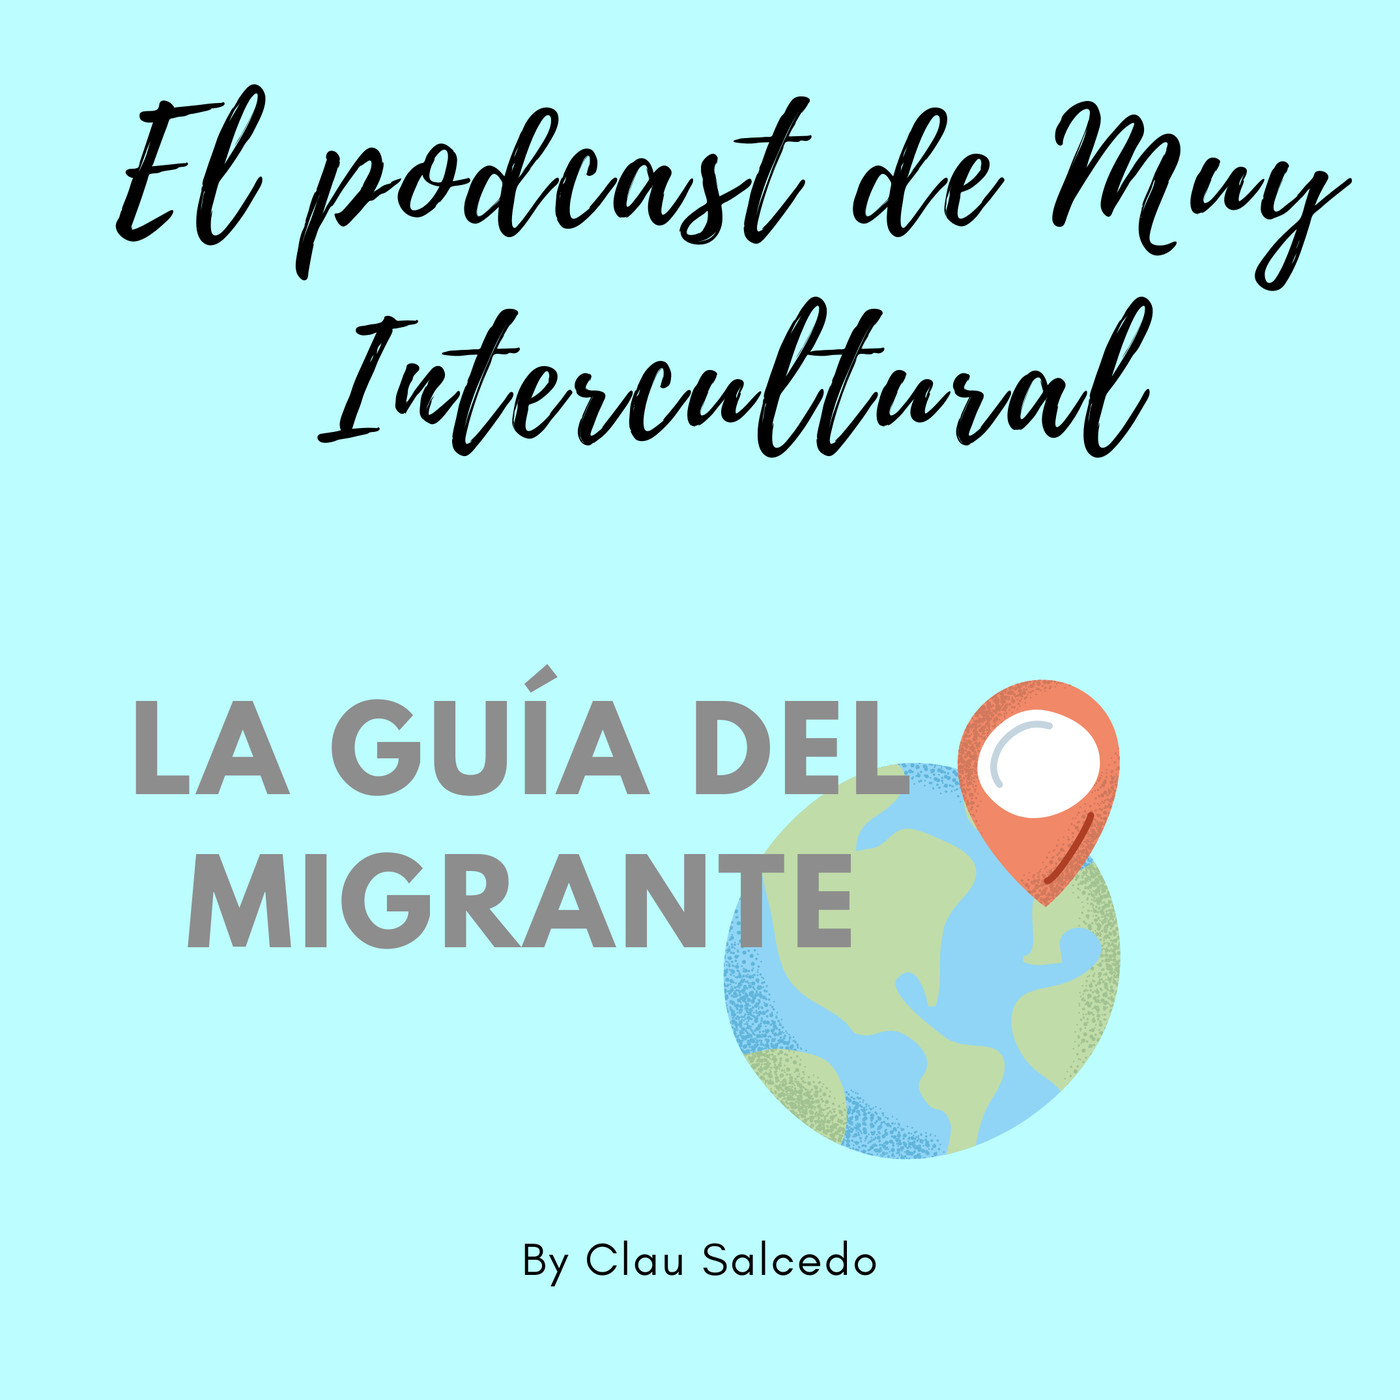 Muy Intercultural: La guía del migrante